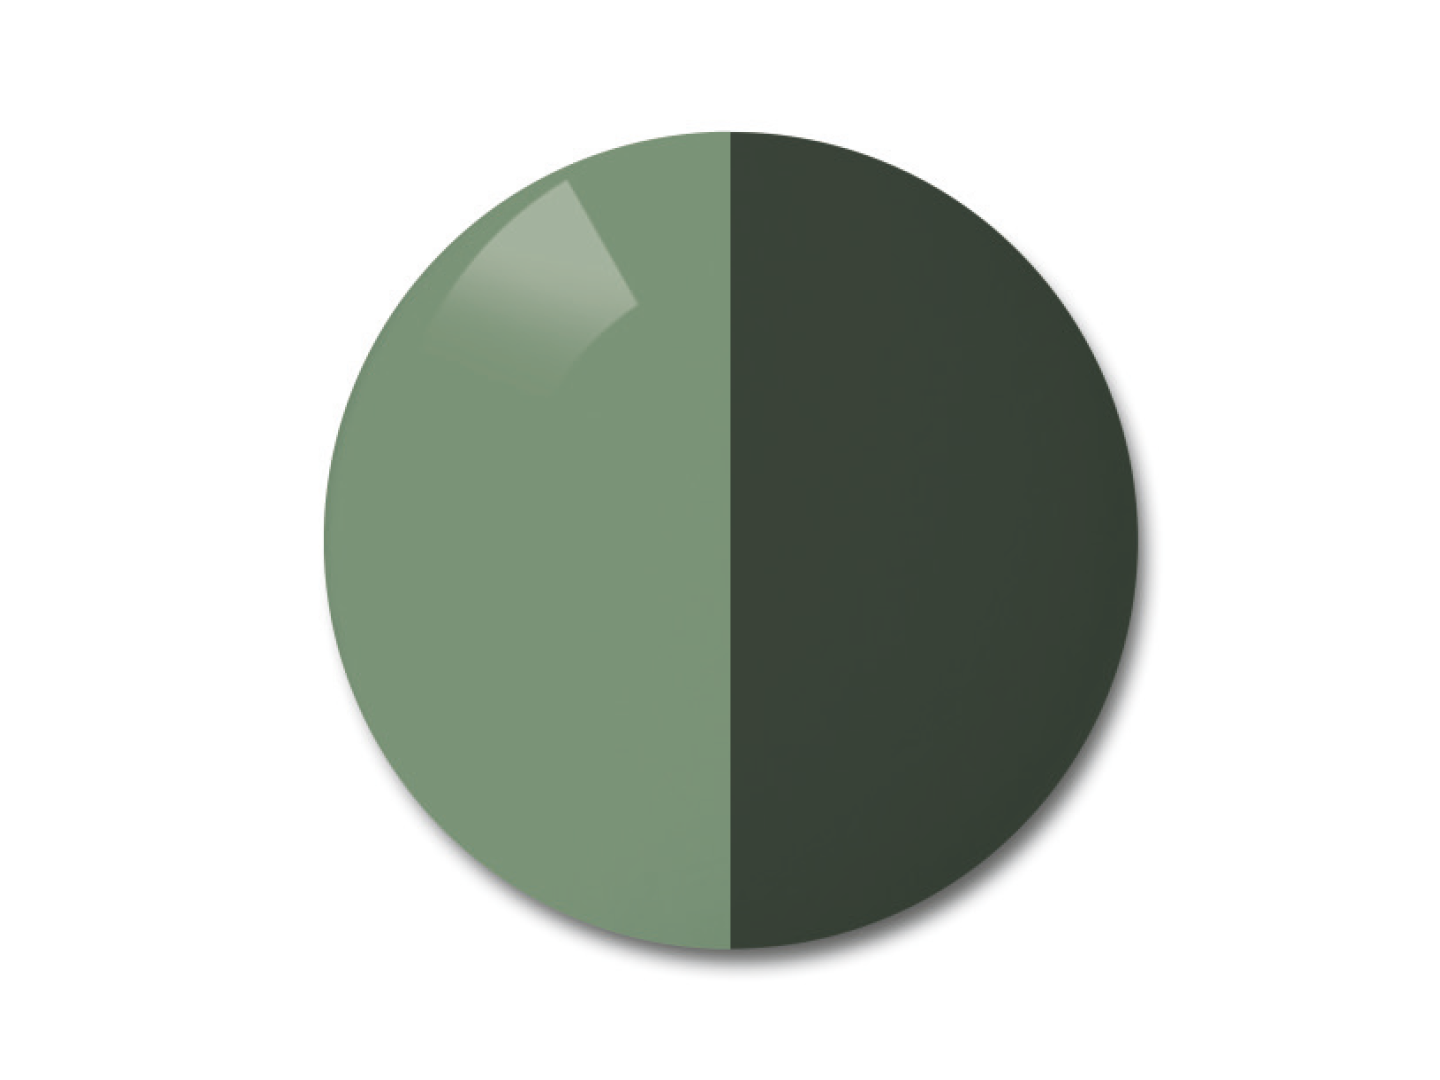 蔡司 AdaptiveSun 灰綠色智能變色太陽鏡片圖解說明 